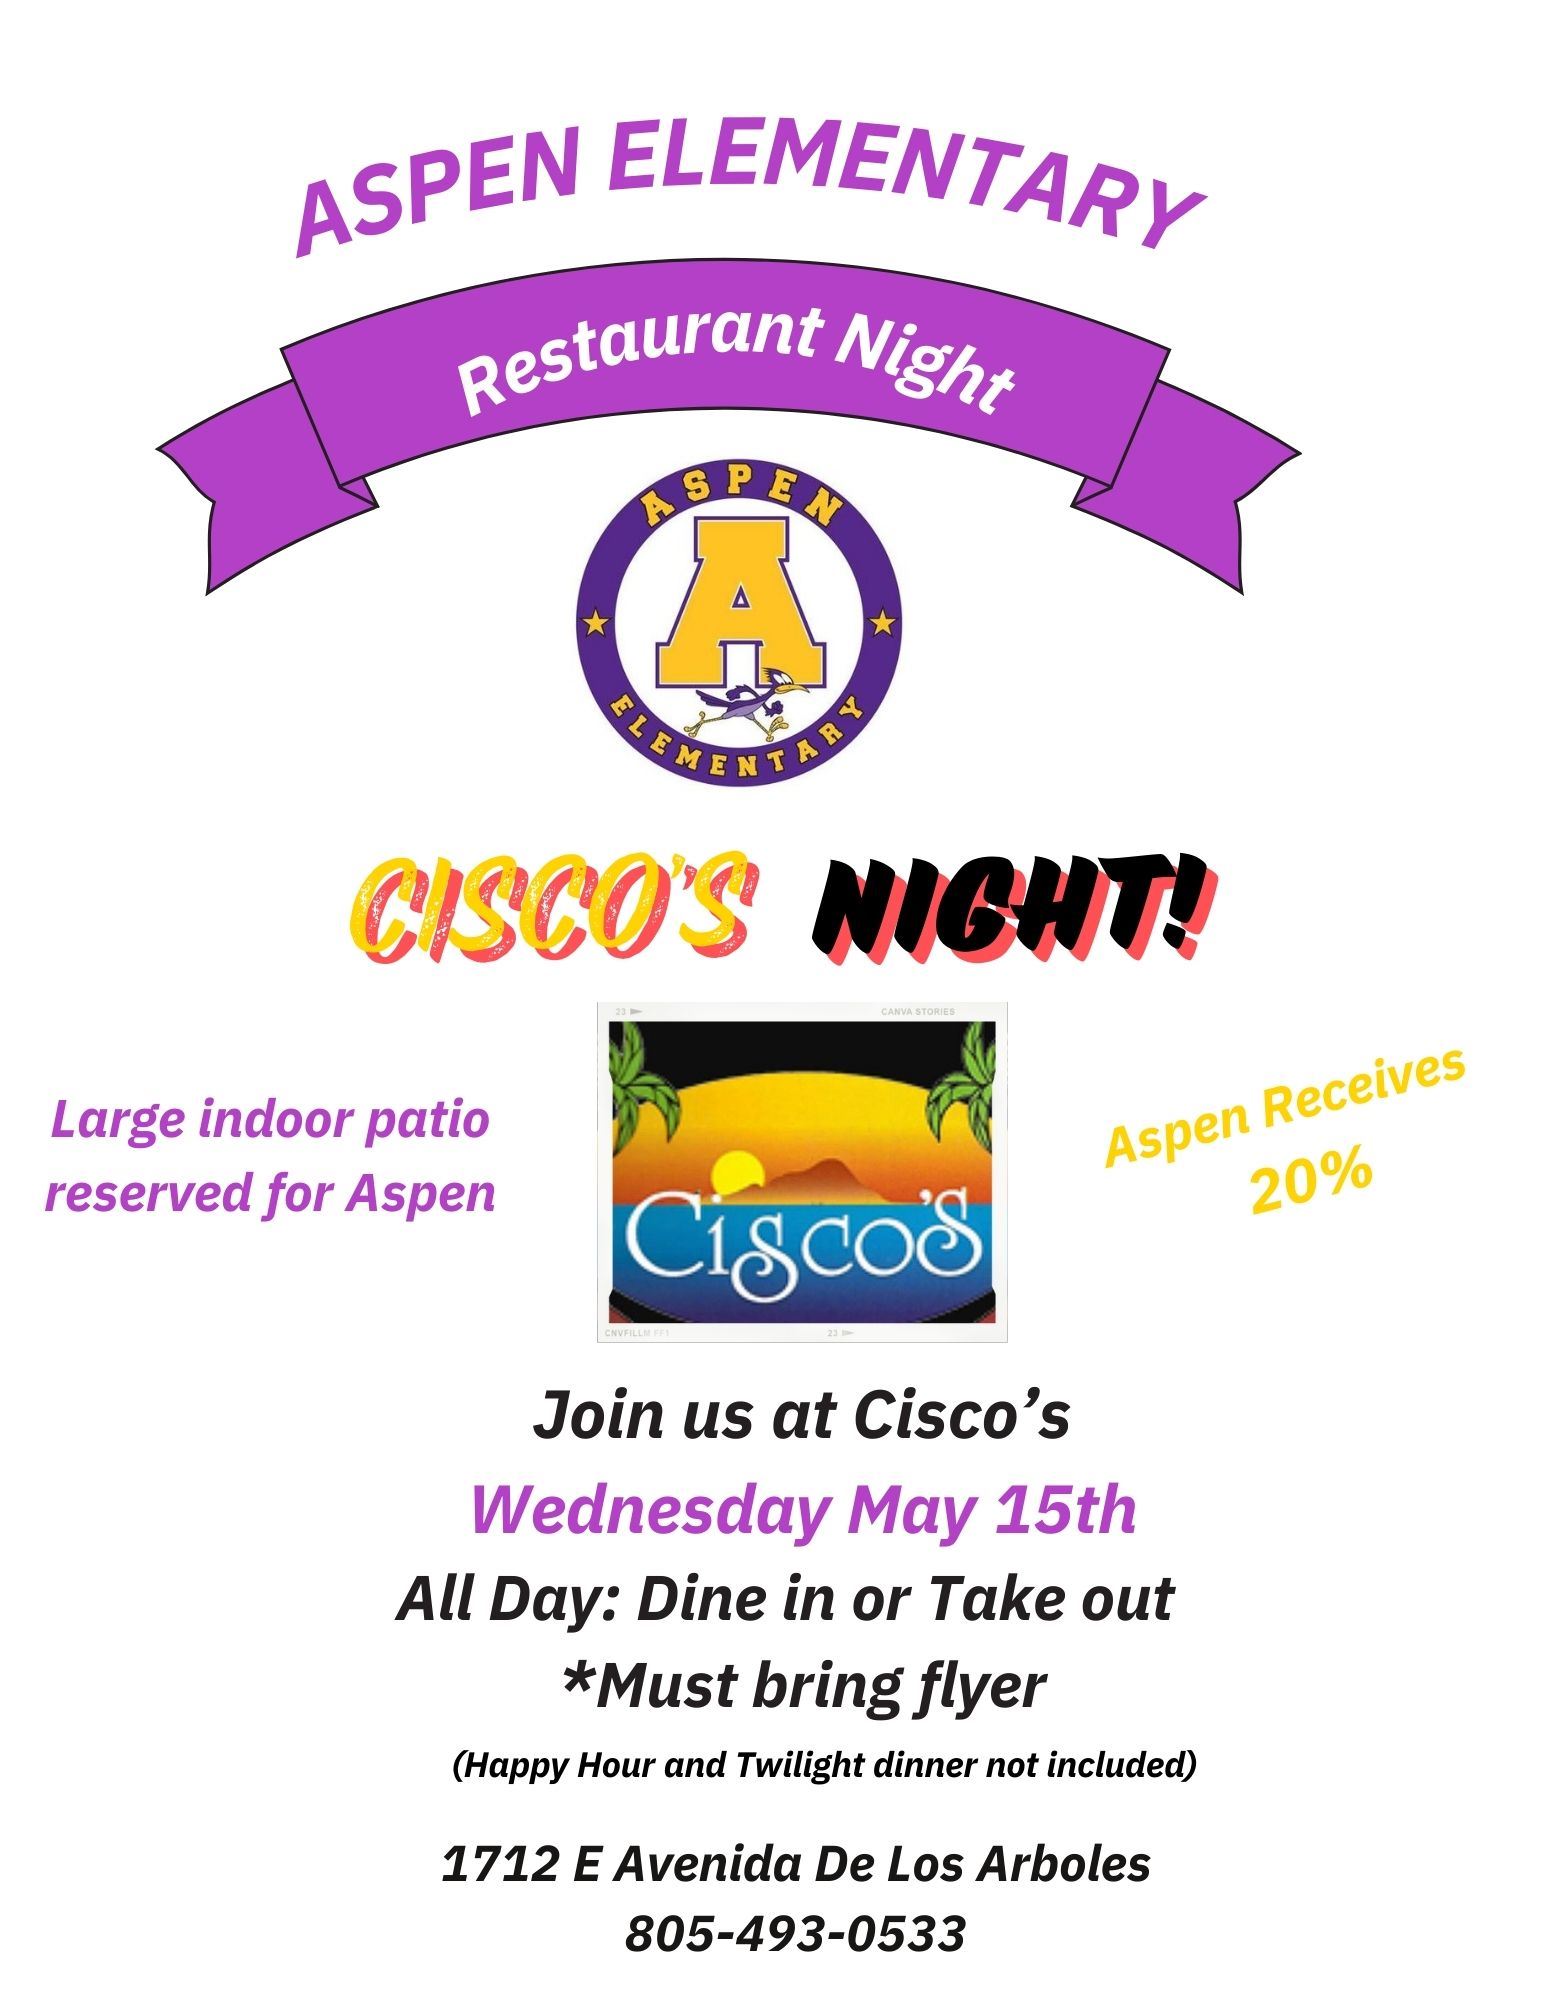  Ciscos Restaurant Night